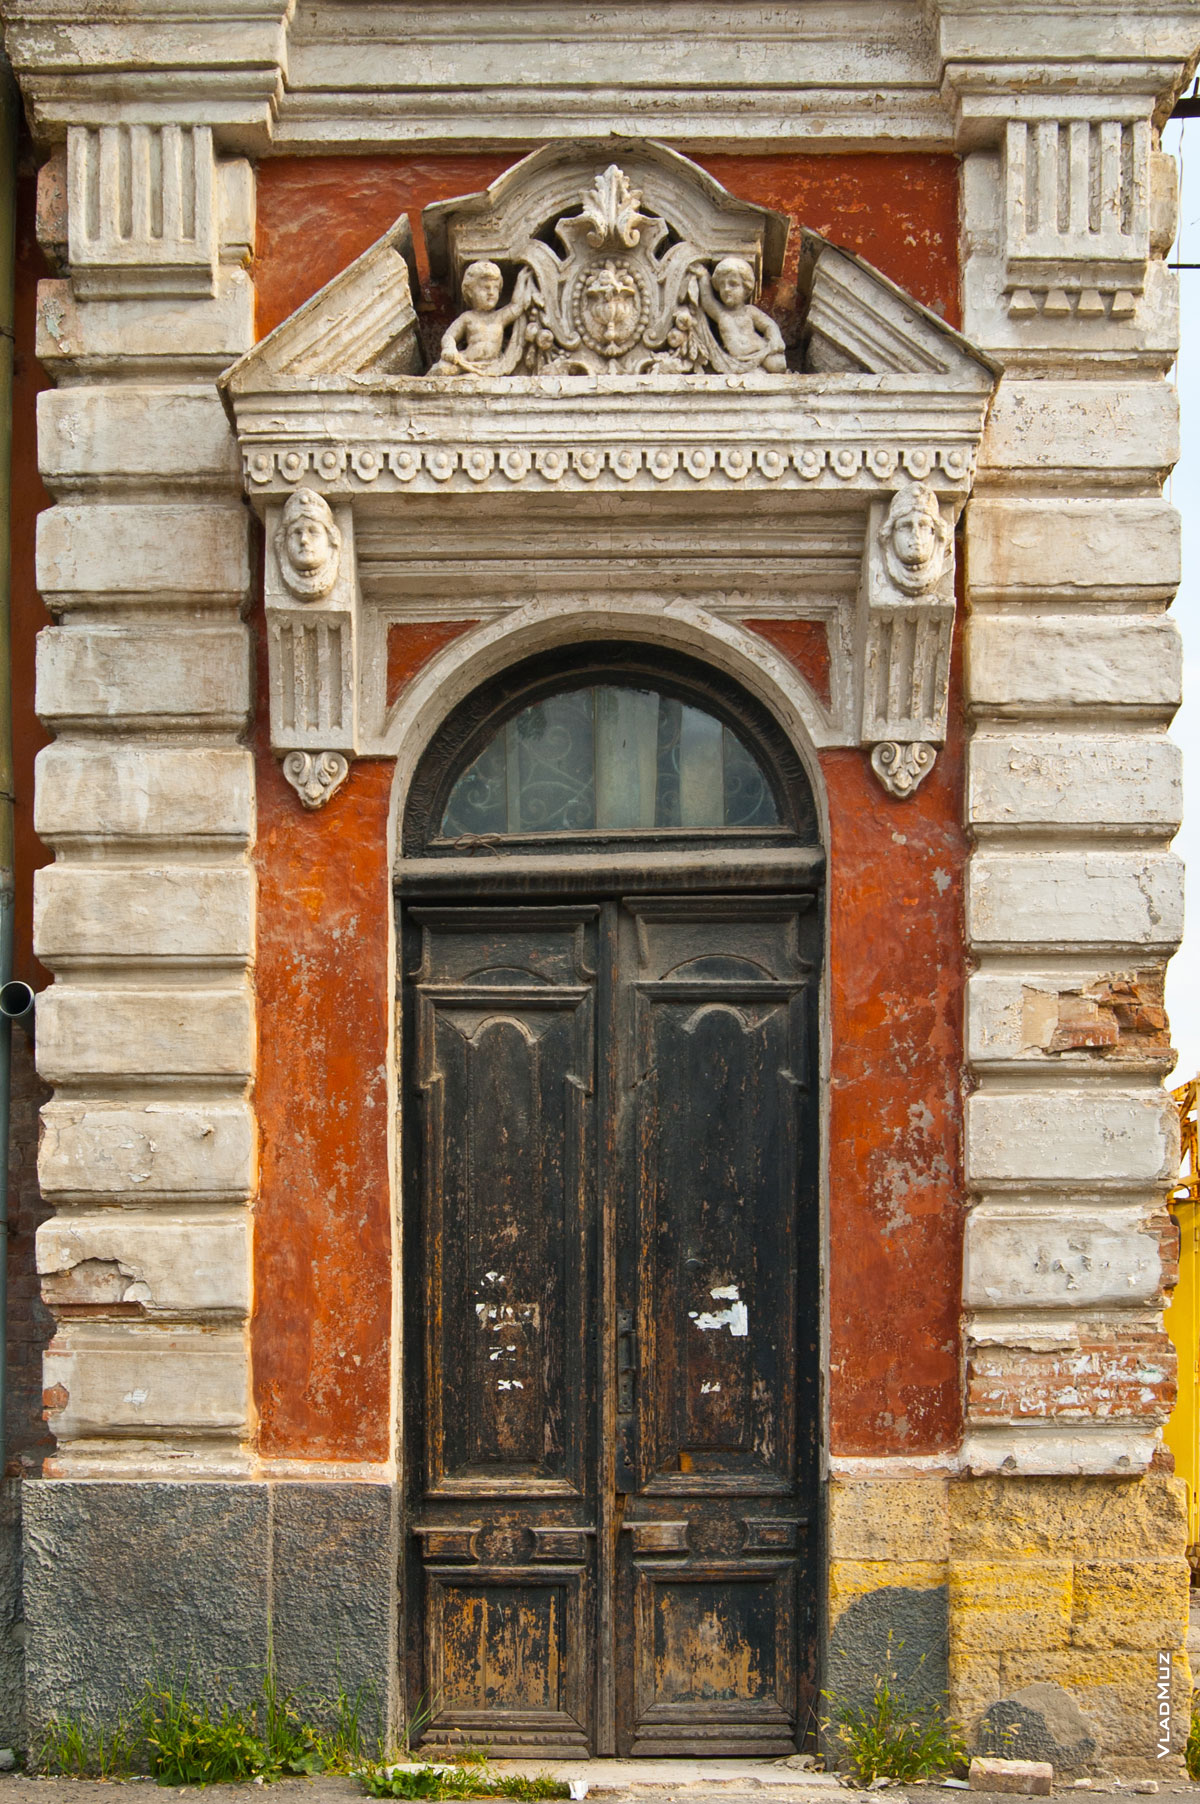 Фото входа в дом в Новочеркасске со старинной скульптурной композицией вверху